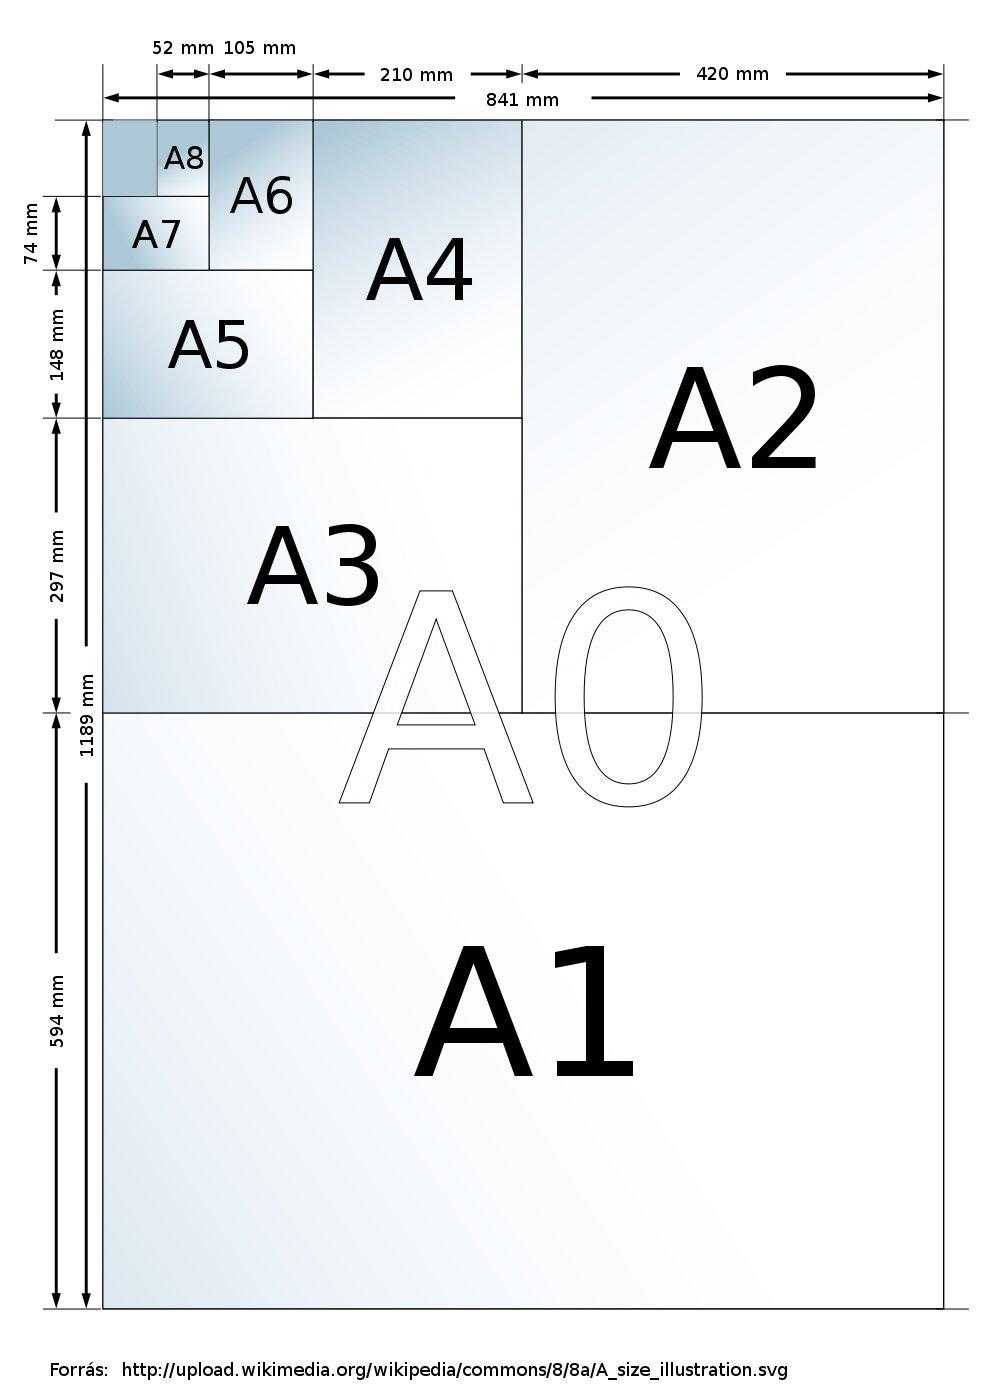 RE: Mekkora egy A0-as papír mérete?